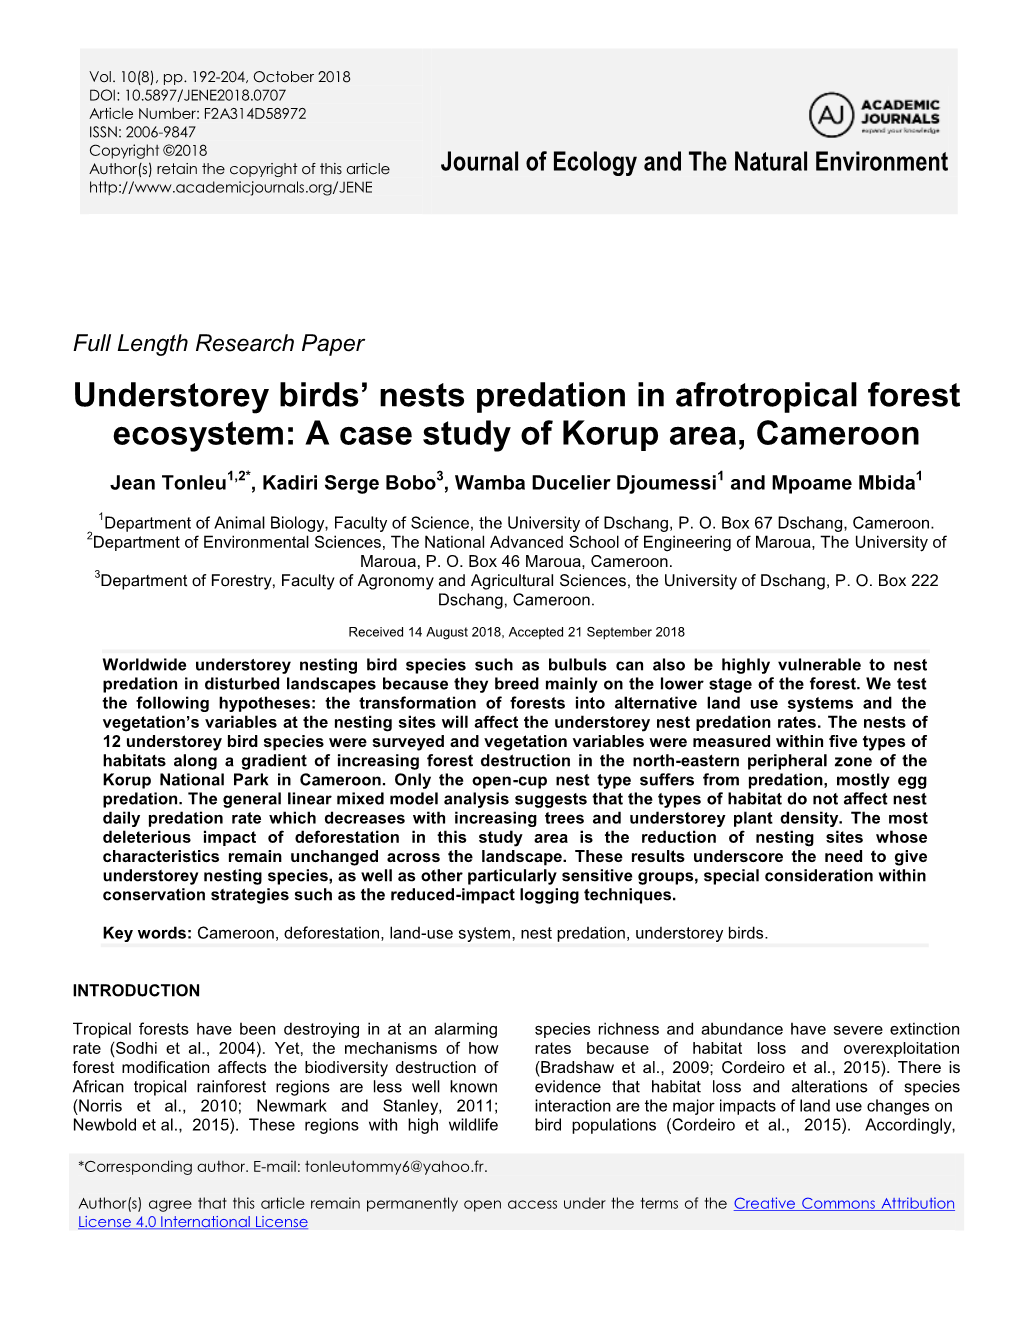 Understorey Birds' Nests Predation in Afrotropical Forest Ecosystem